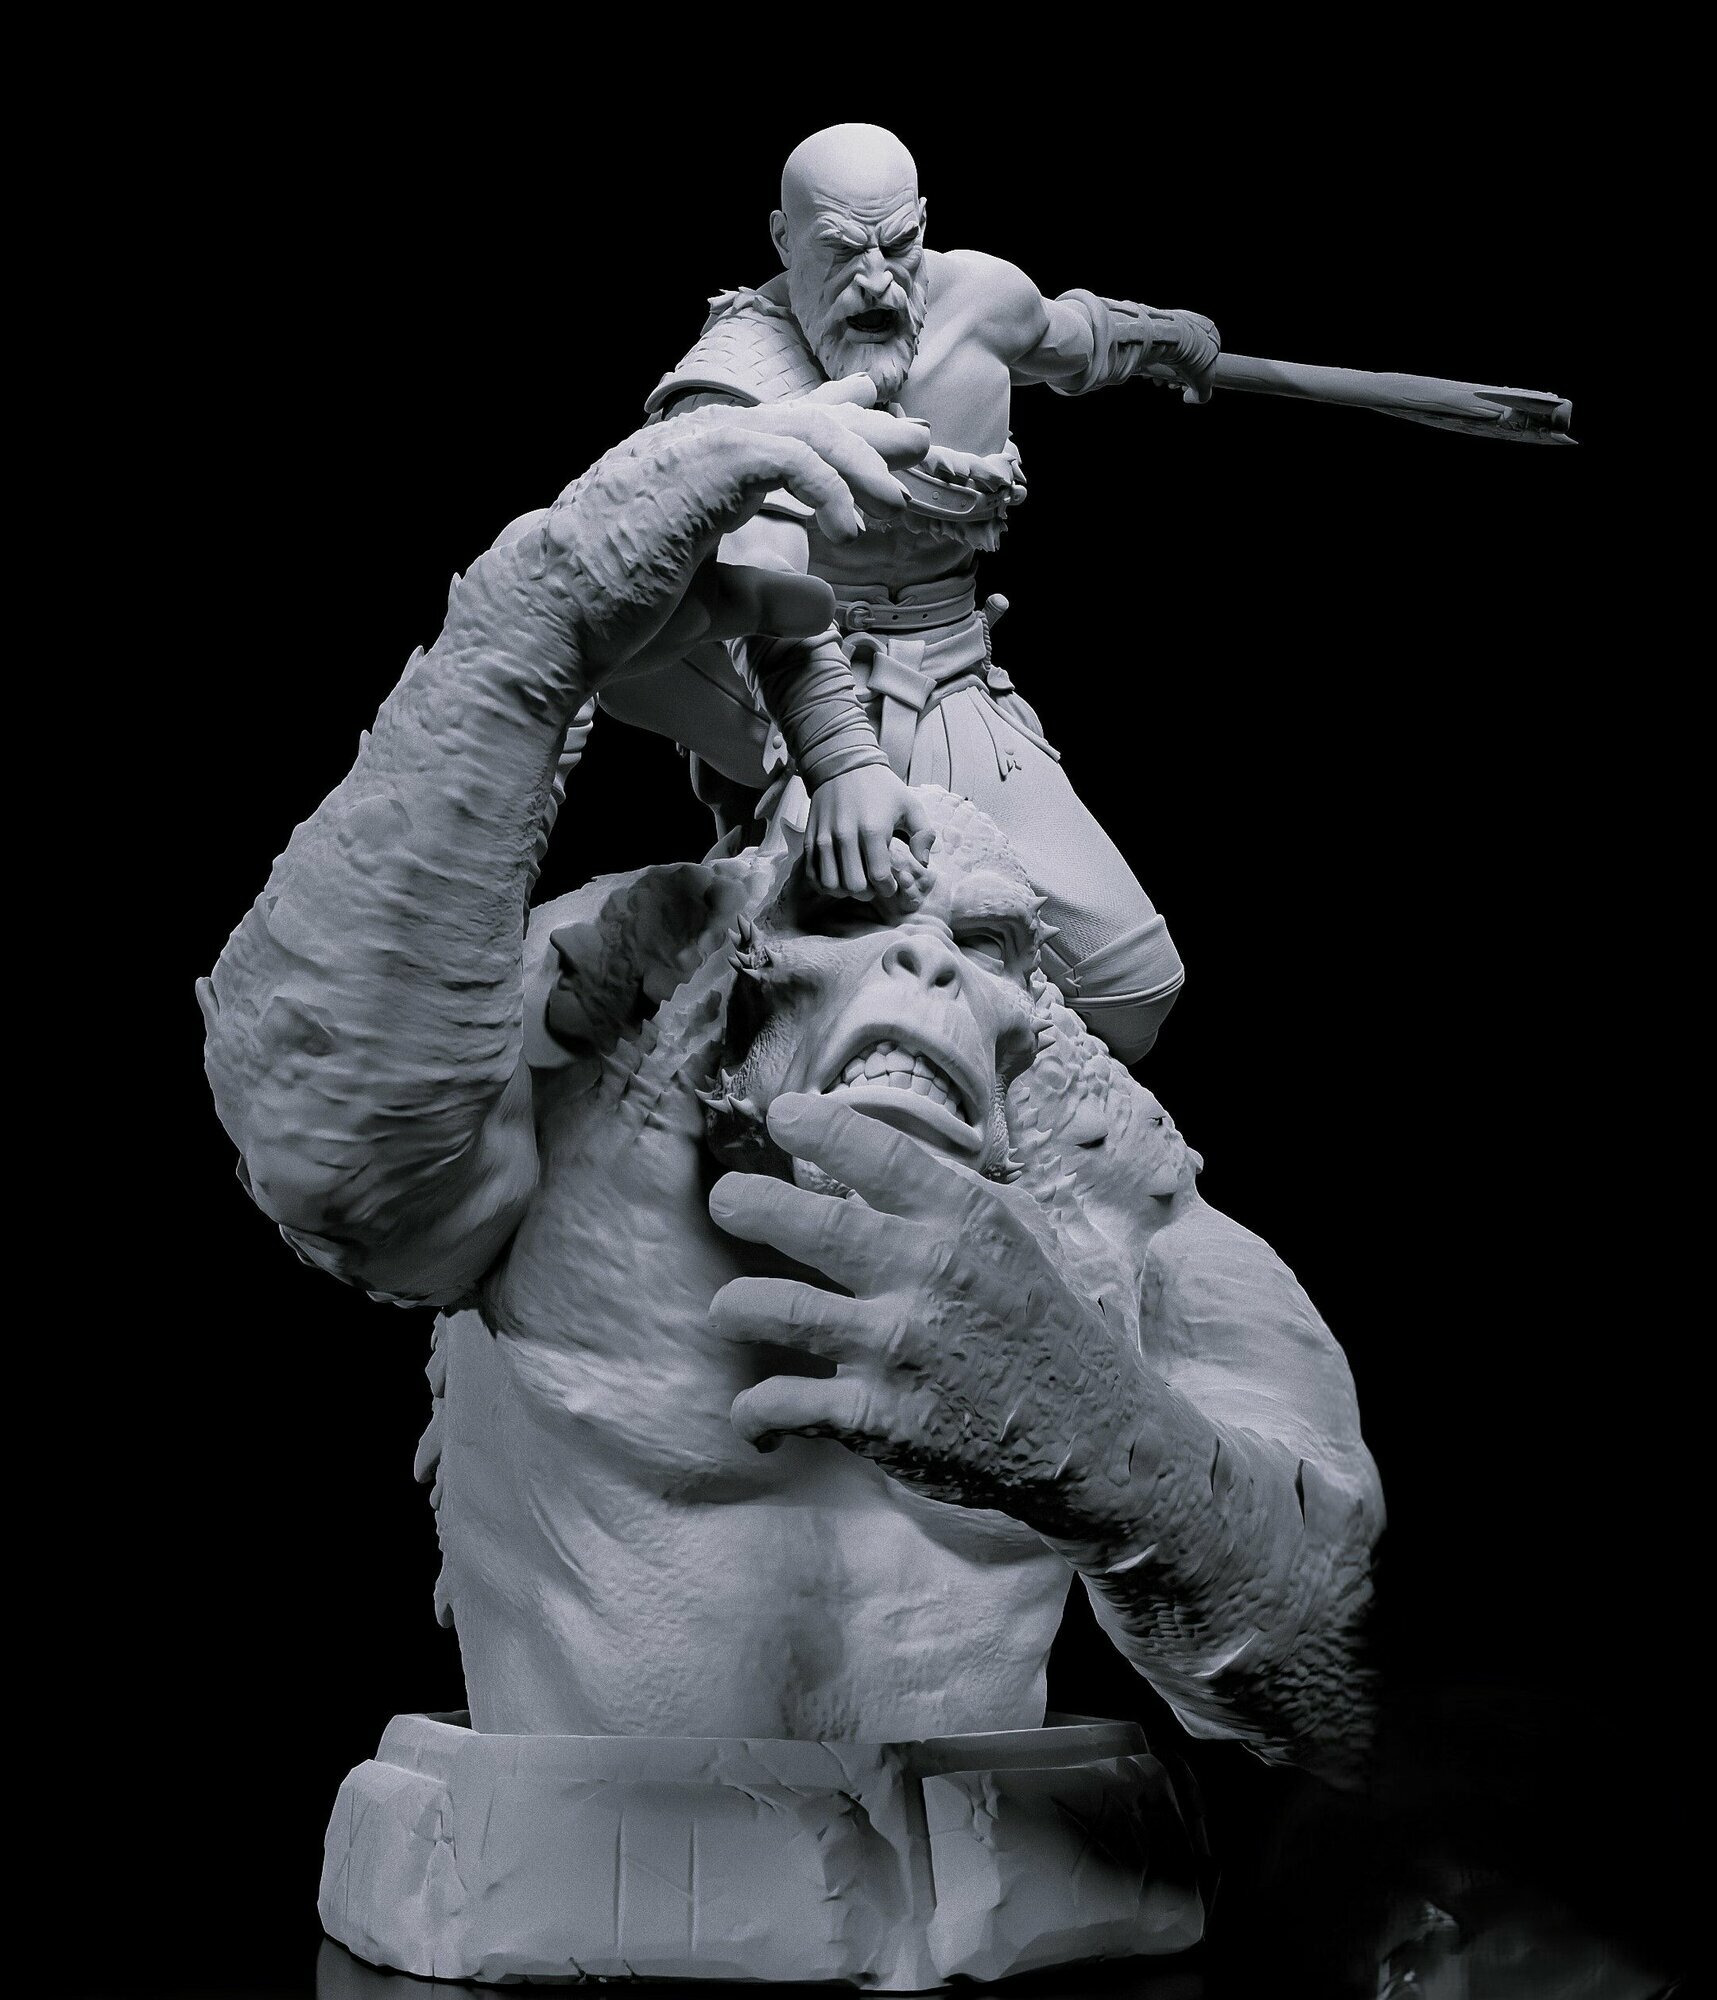 Миниатюра персонажа Кратос(Kratos) на чудище из игры God of War